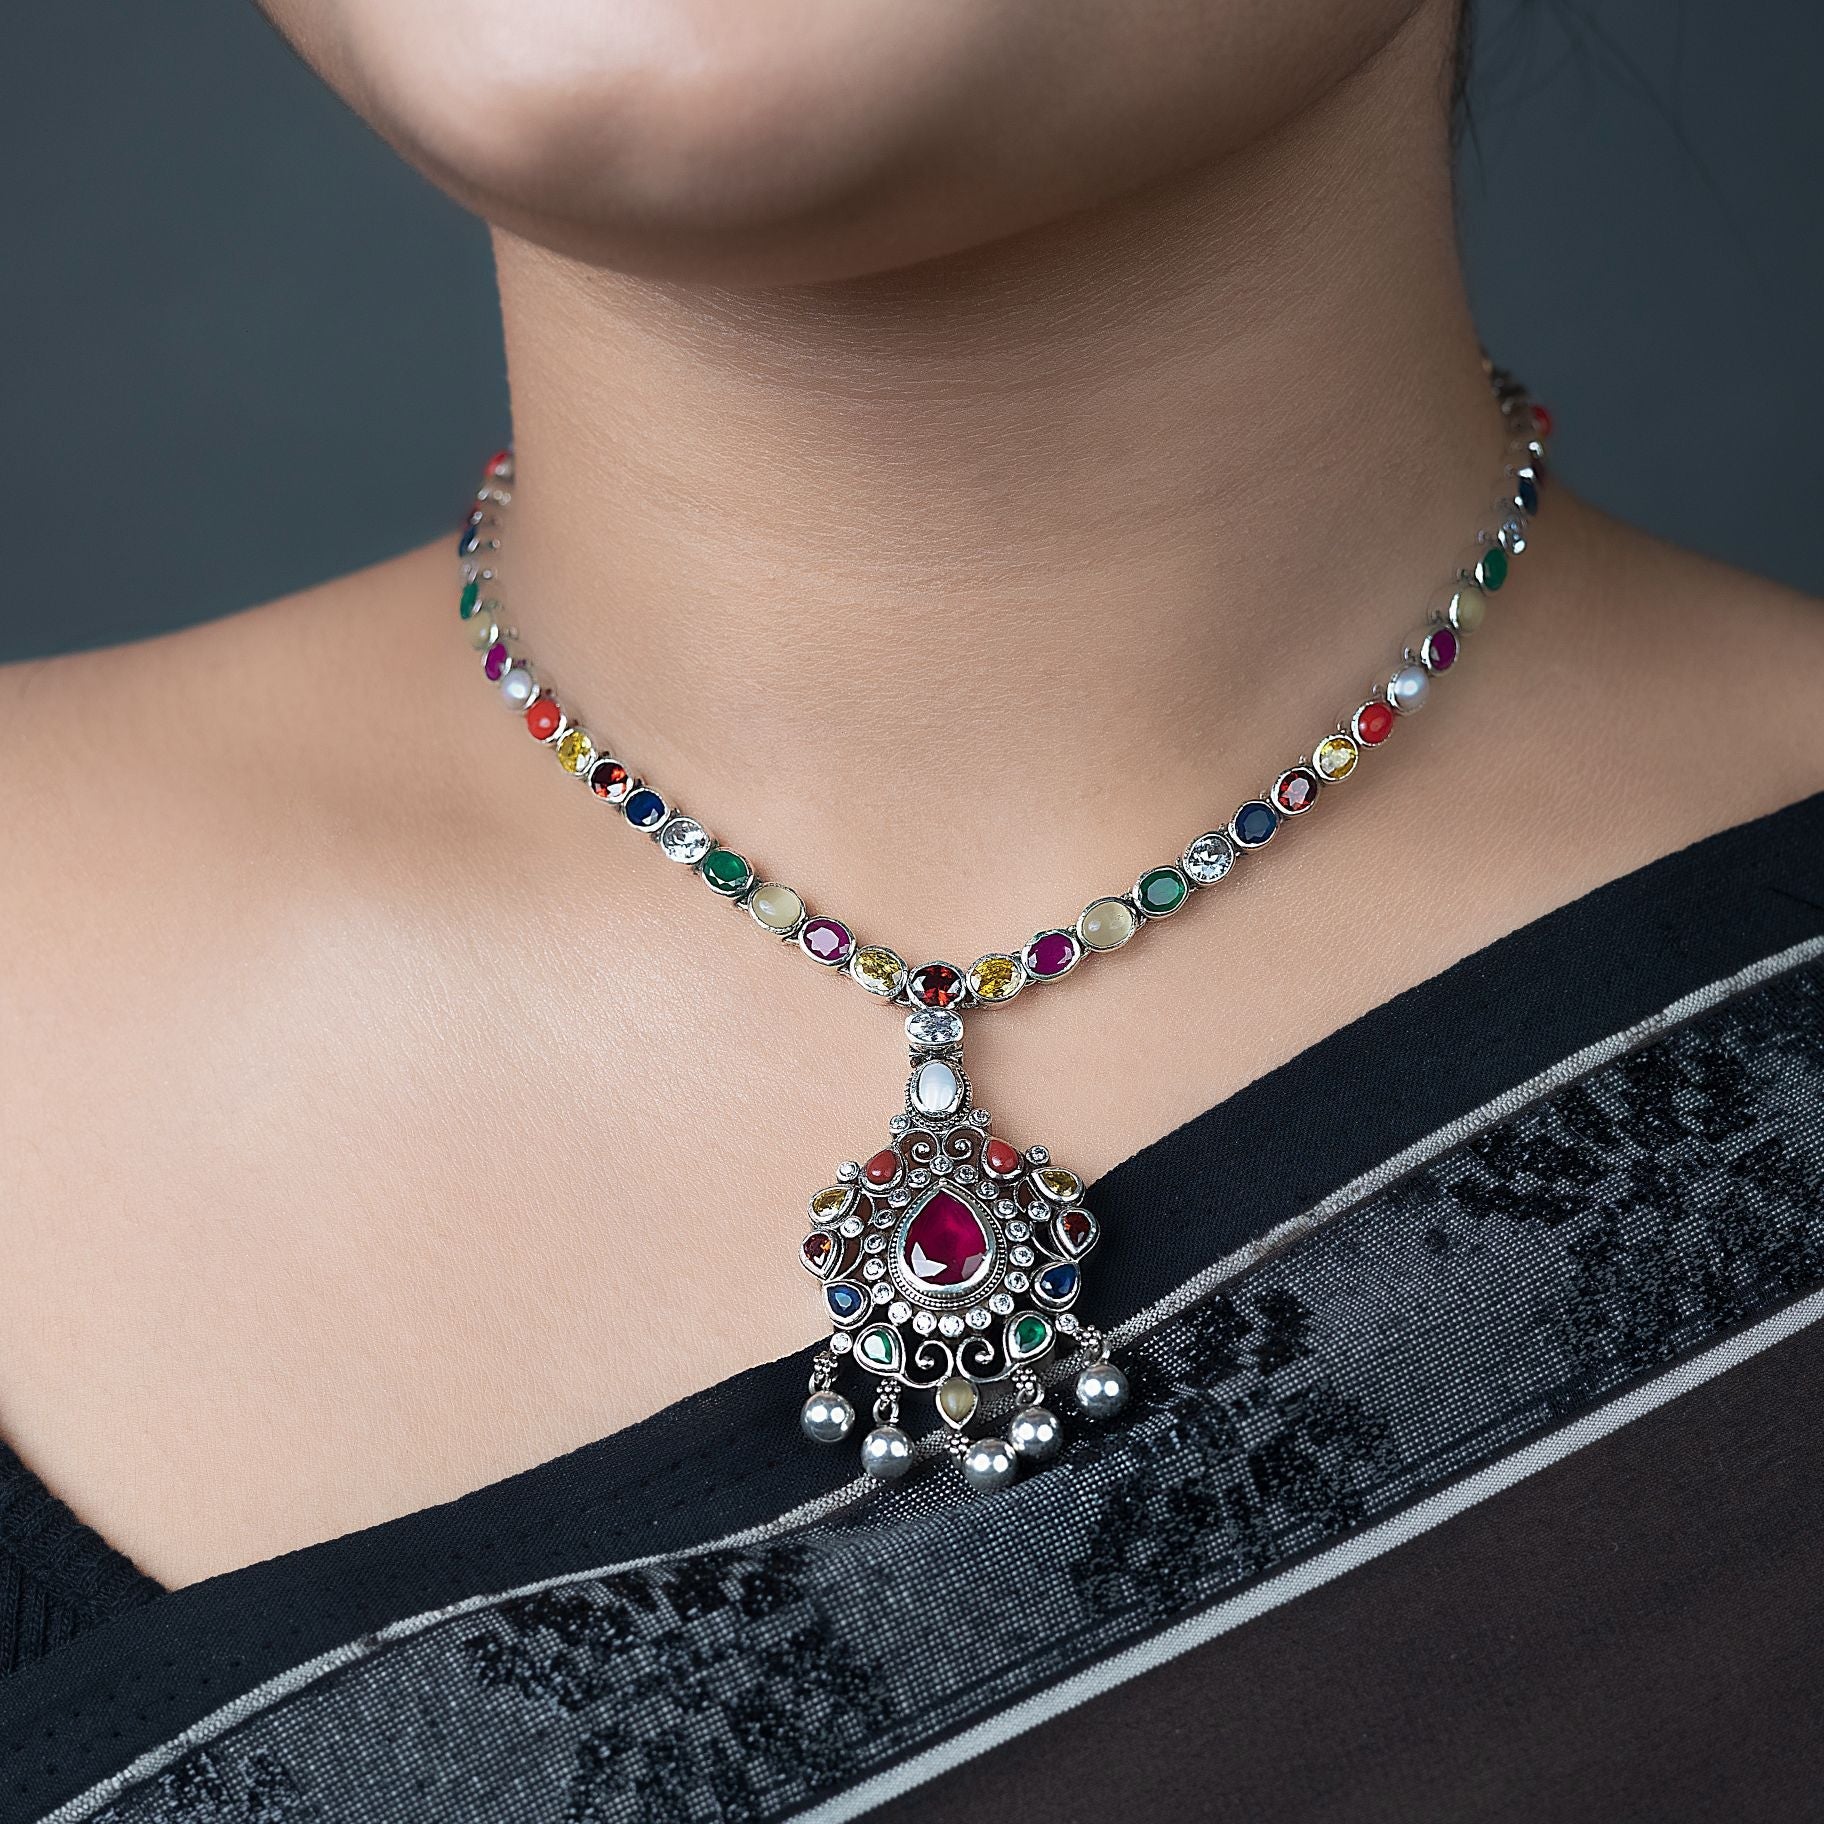 Delightful Navratna necklace silverhousebyrj